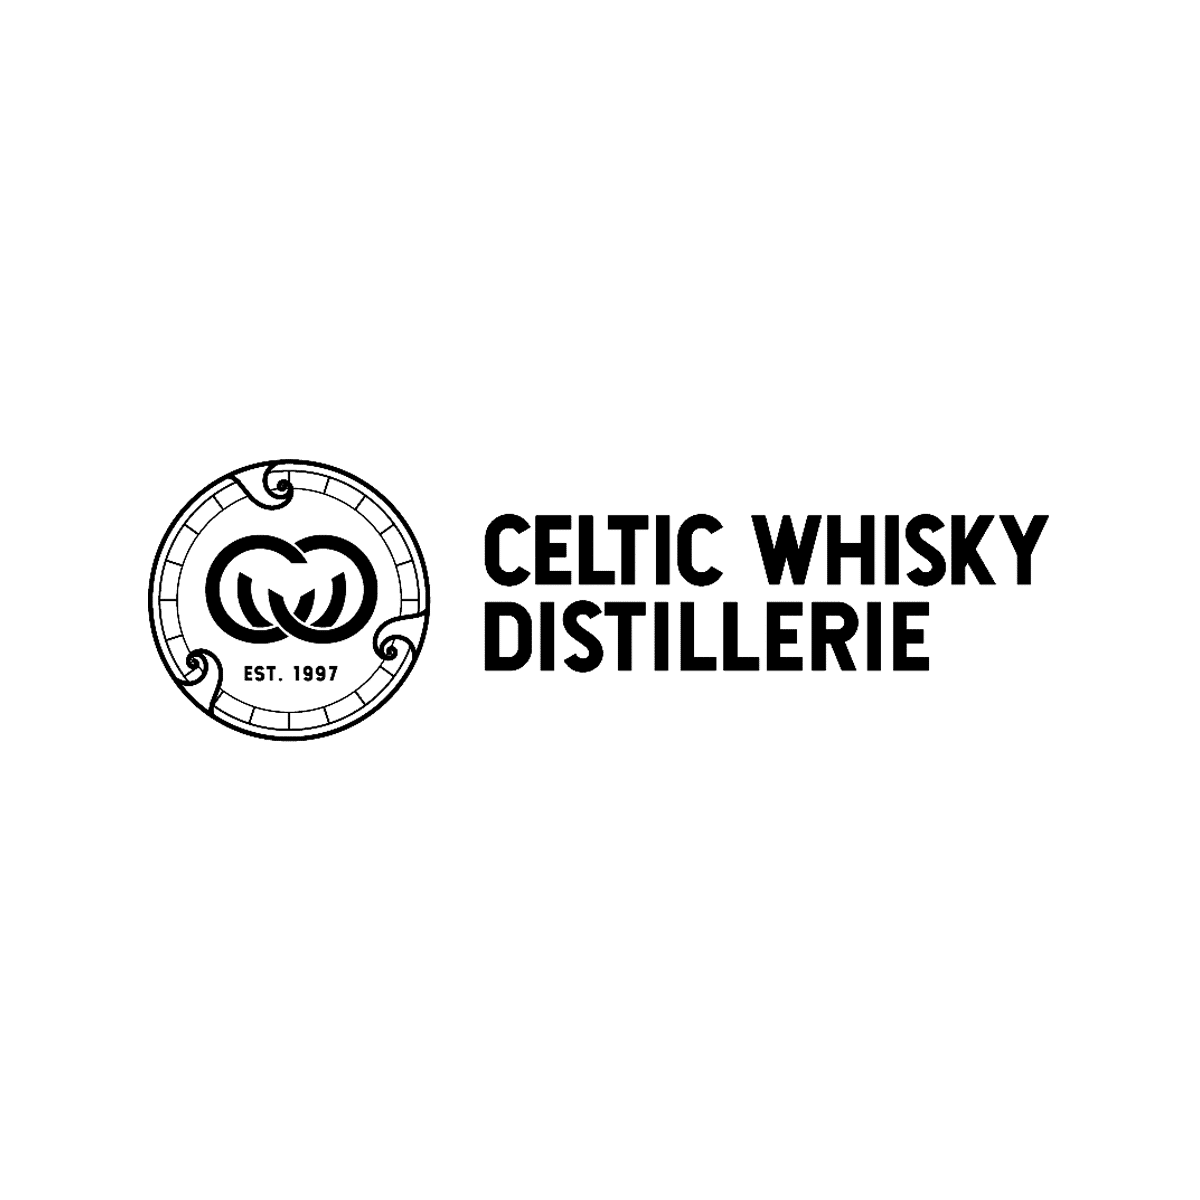 Glann Ar Mor Celtic whisky Logo